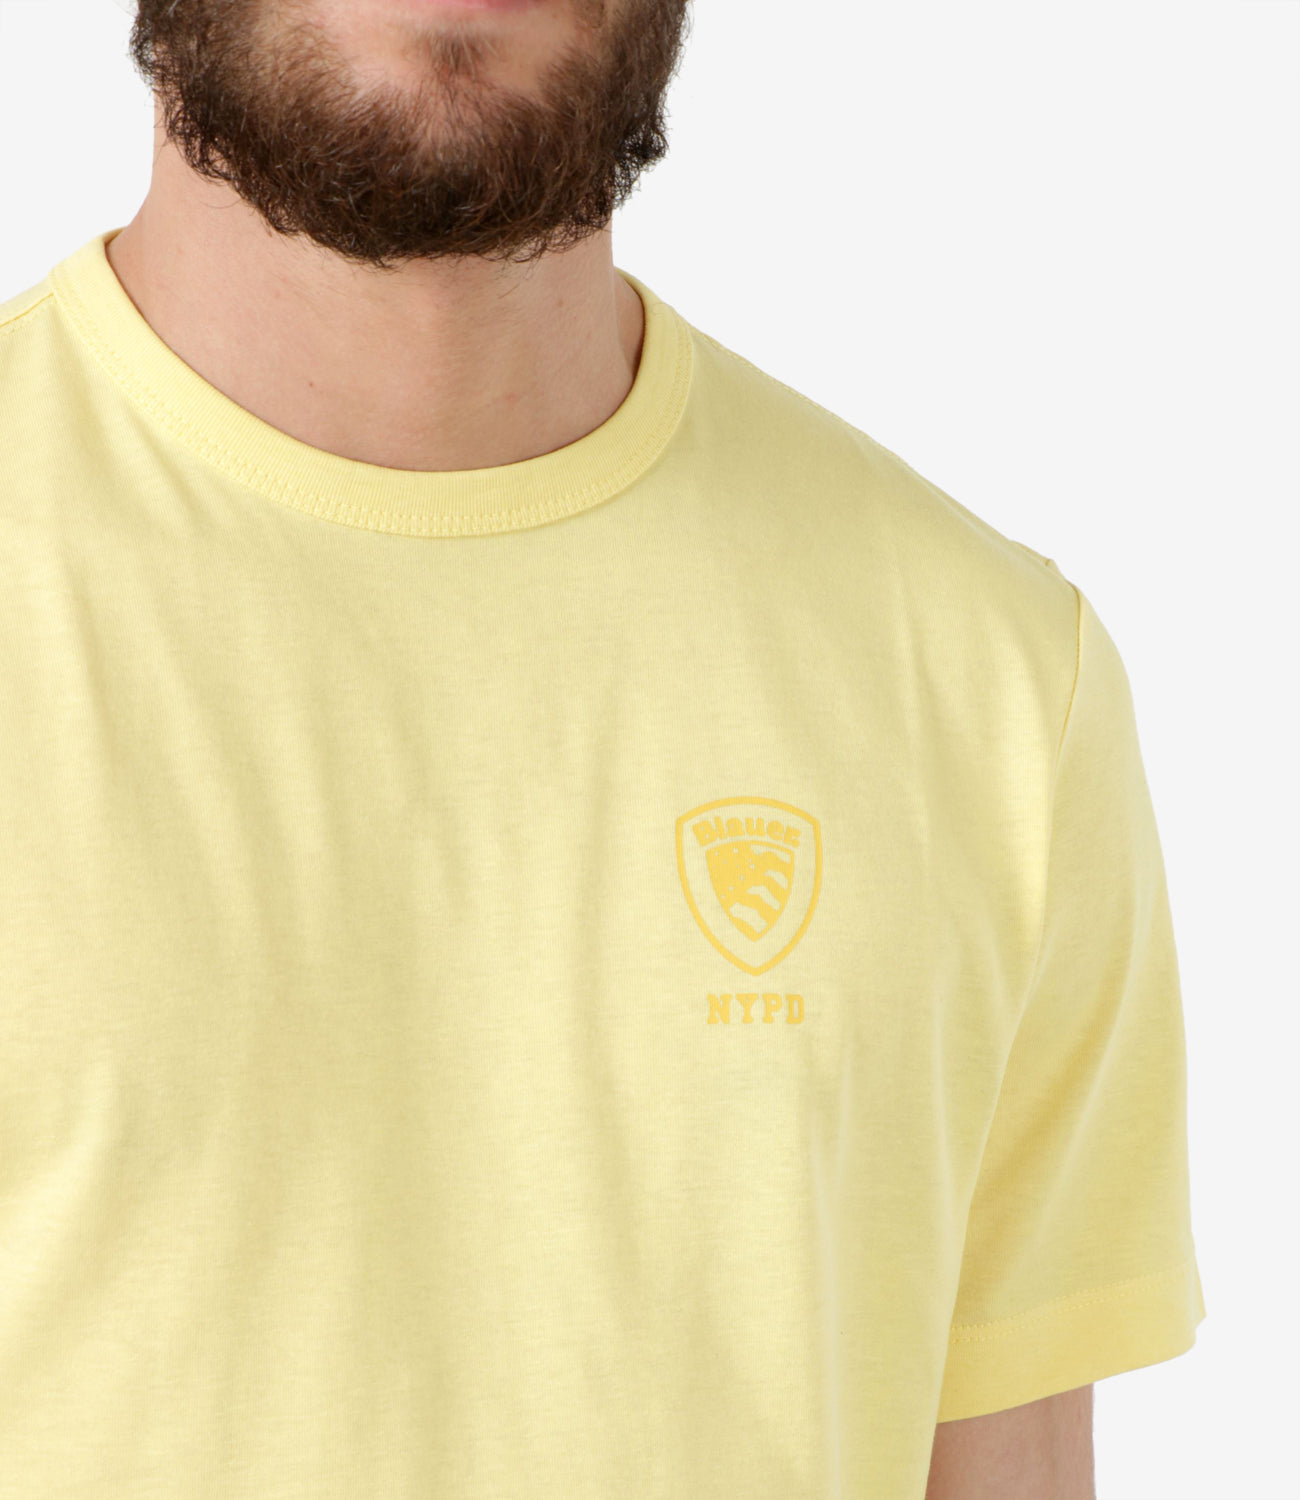 Blauer | Yellow T-Shirt